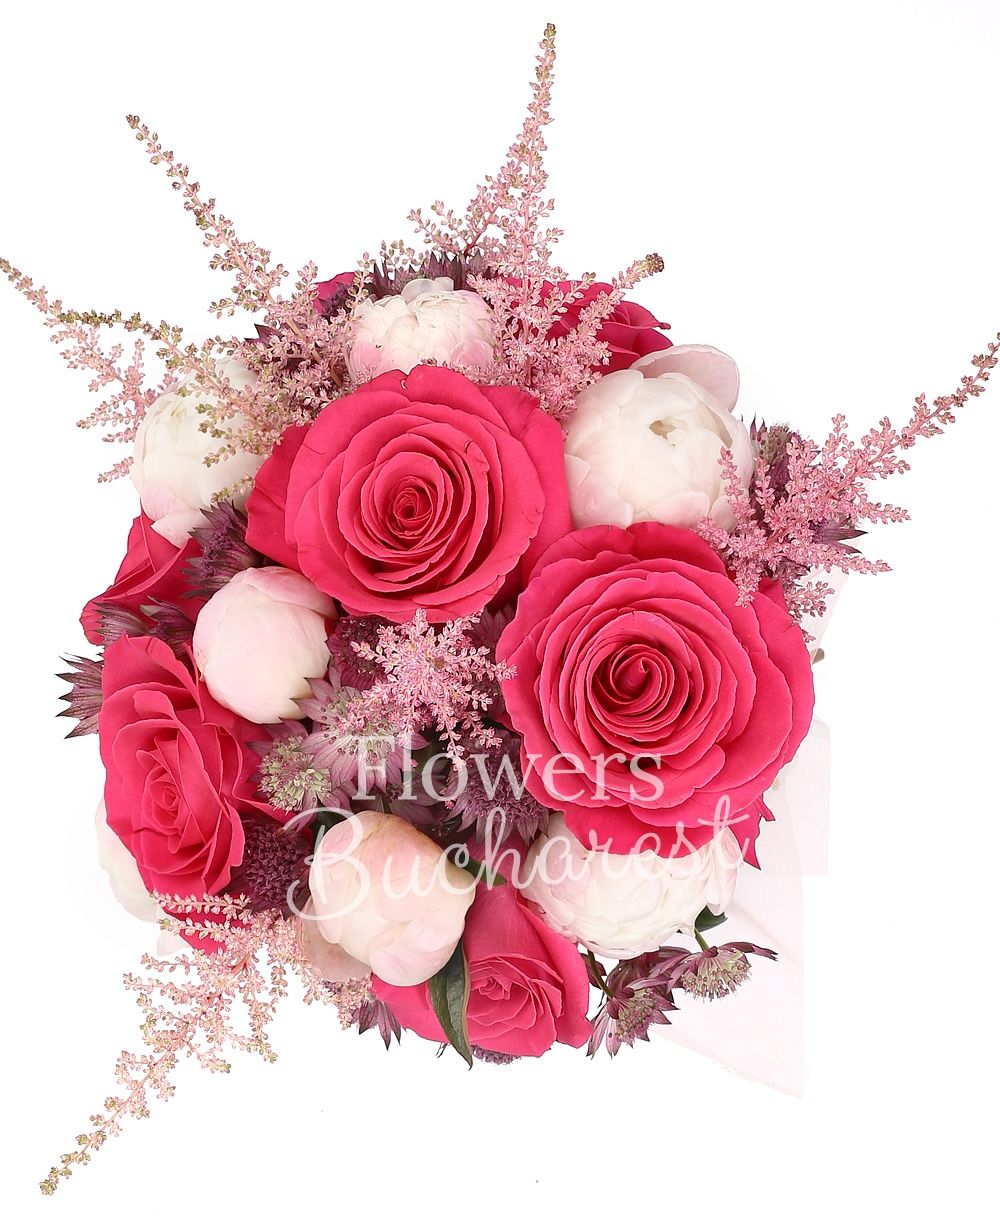 7 pink roses, 7 white peonies, 10 astranția, 7 pink astilbe